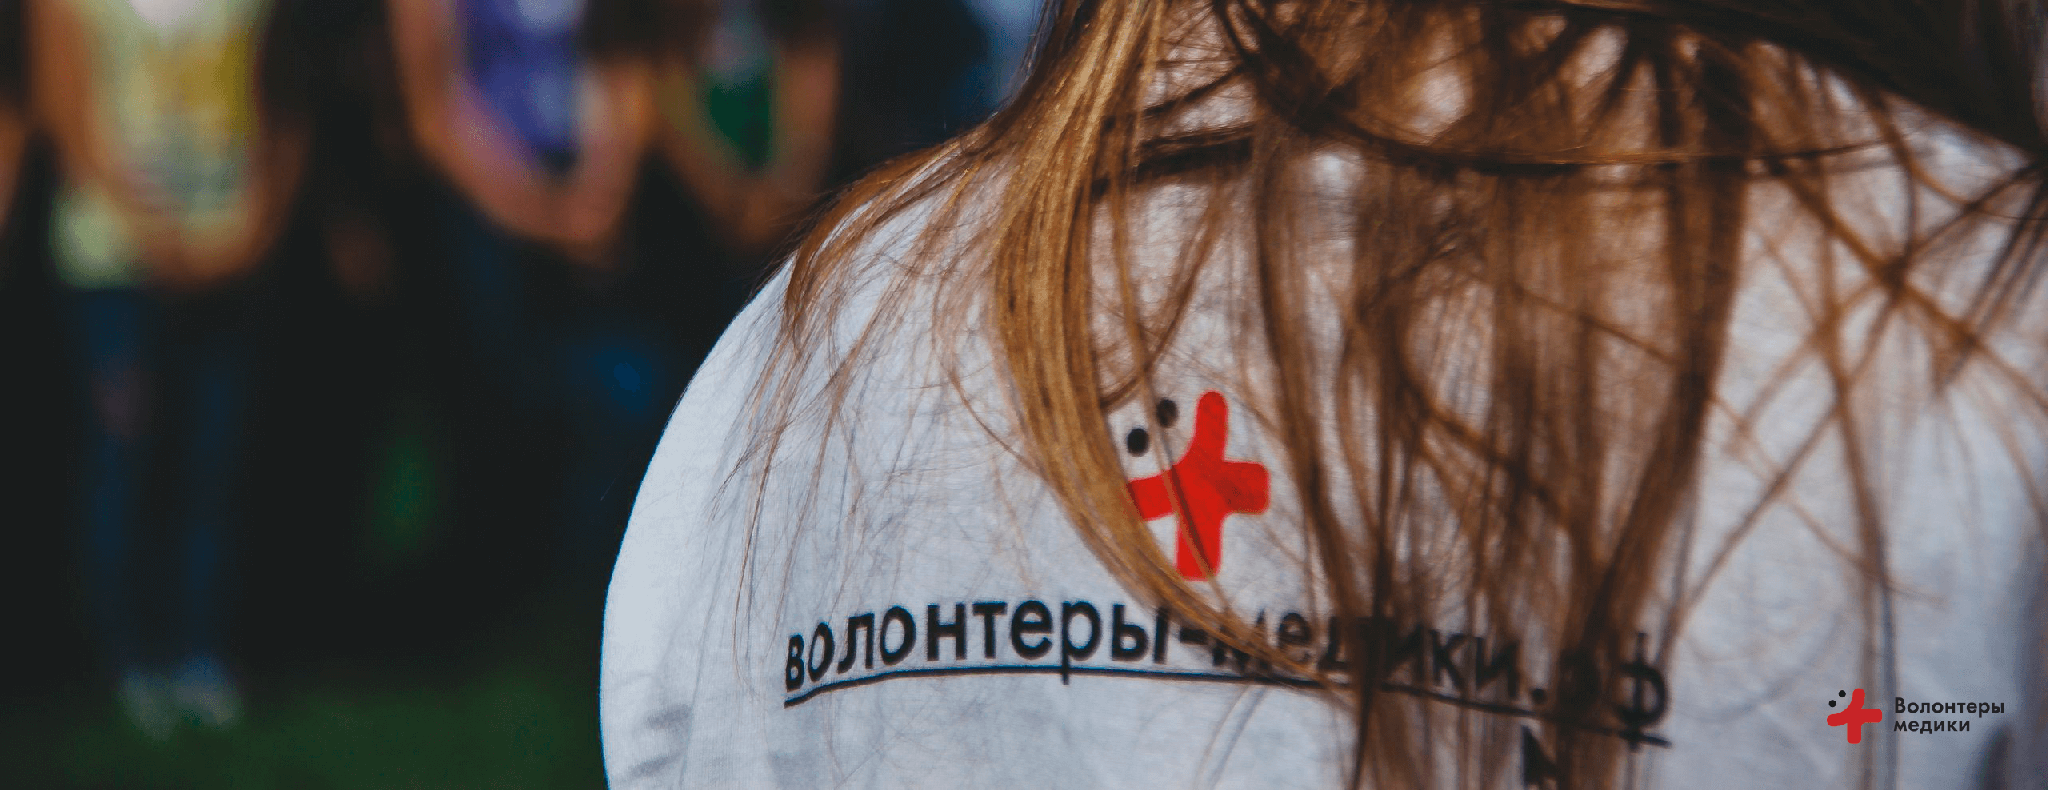 Владимирские волонтеры помогли жителям дома-интерната Суздальского района